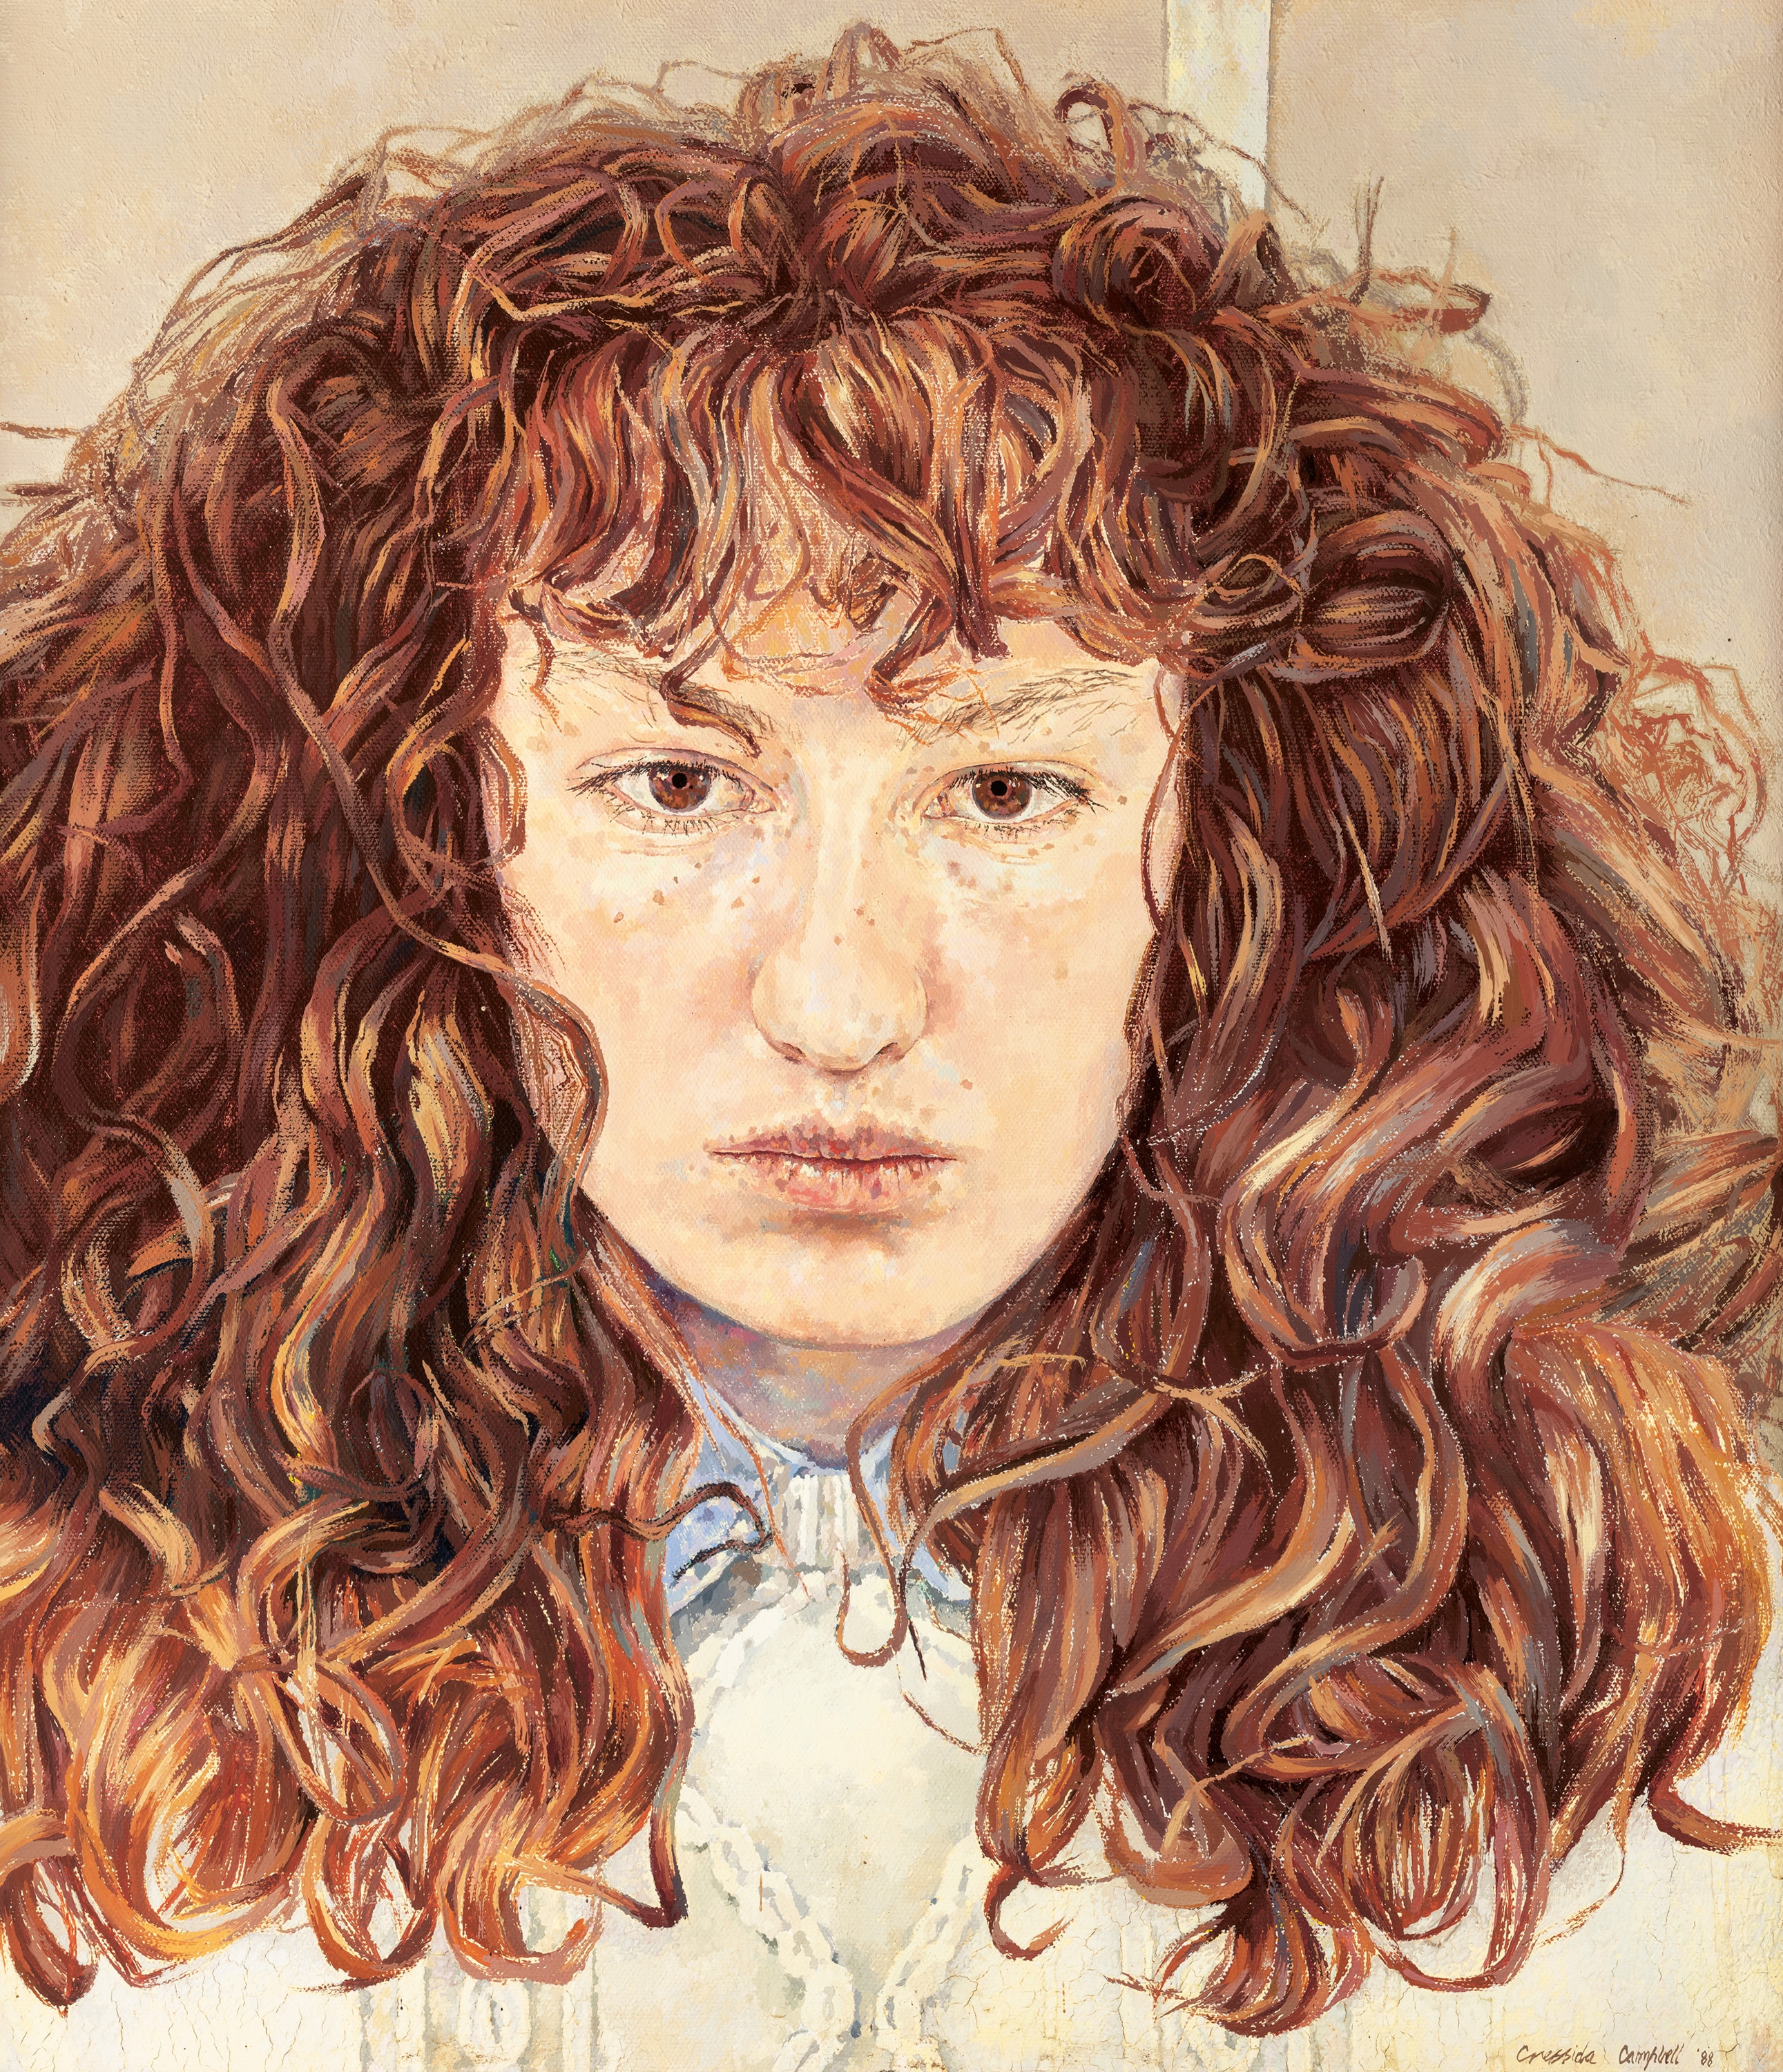 Ritratto di una donna sui vent'anni, dall'espressione severa.  Ha folti capelli castani, ciglia e occhi castani.